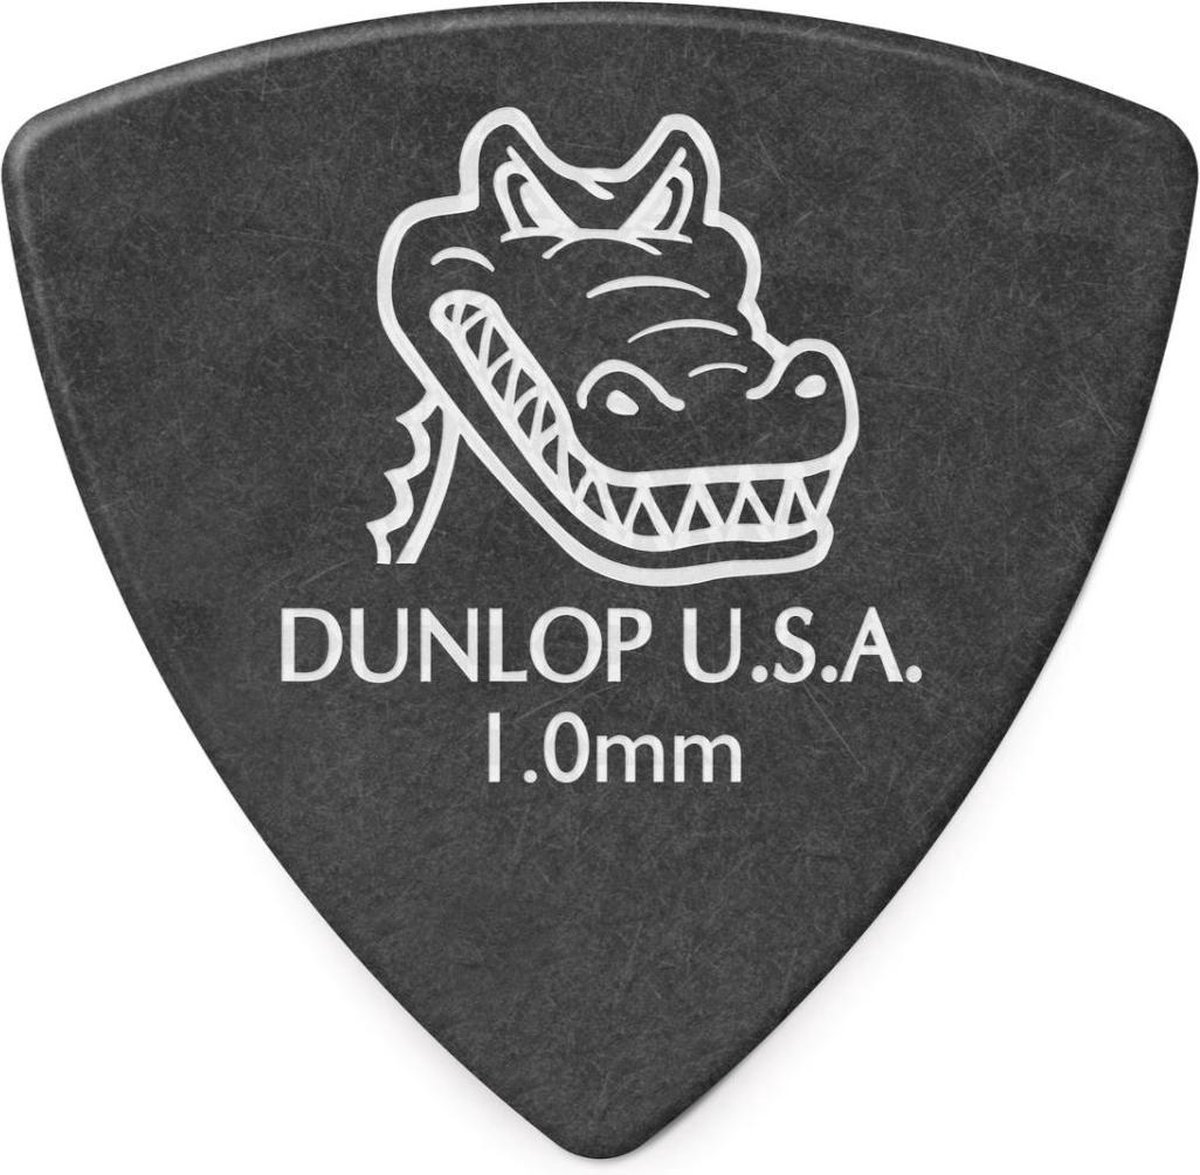 Dunlop Tortex Triangle médiator de basse 1.00mm bleu